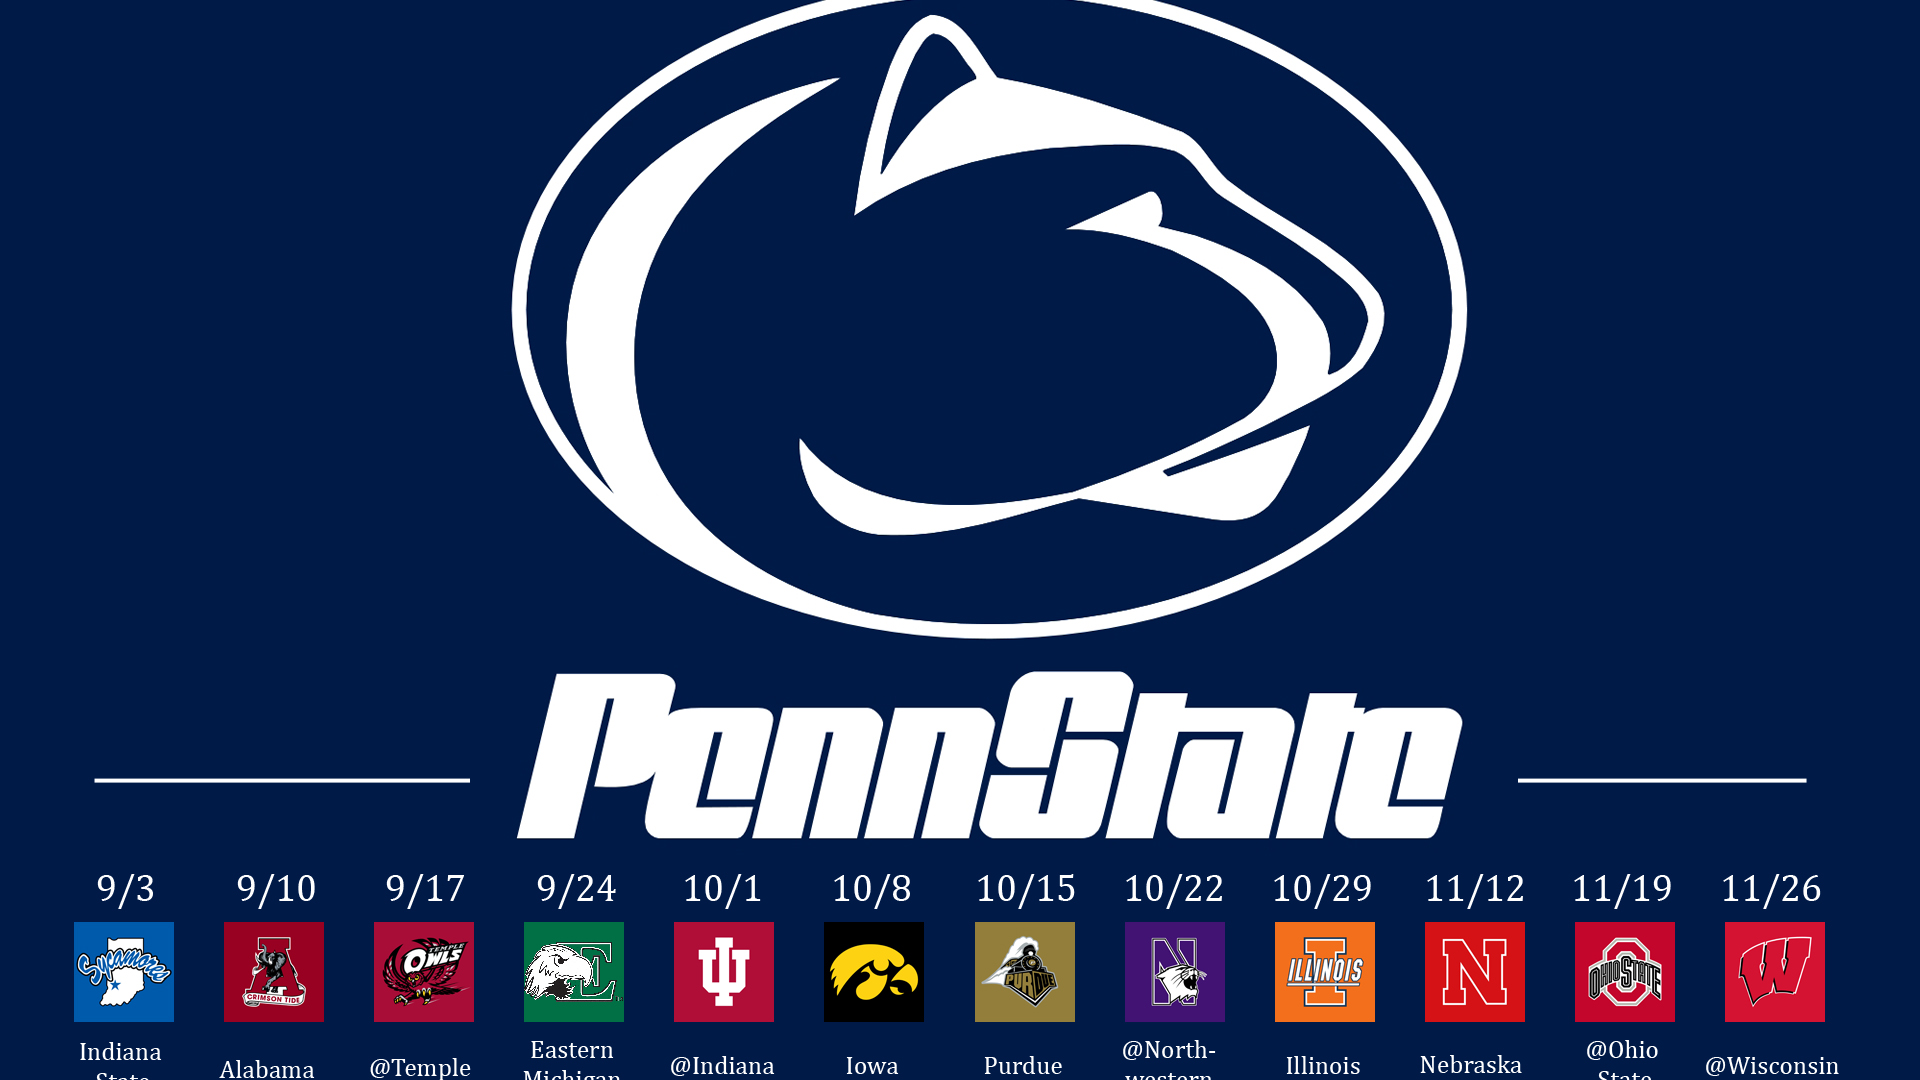 HD Wallpaper Penn State University Logo X Kb Jpeg